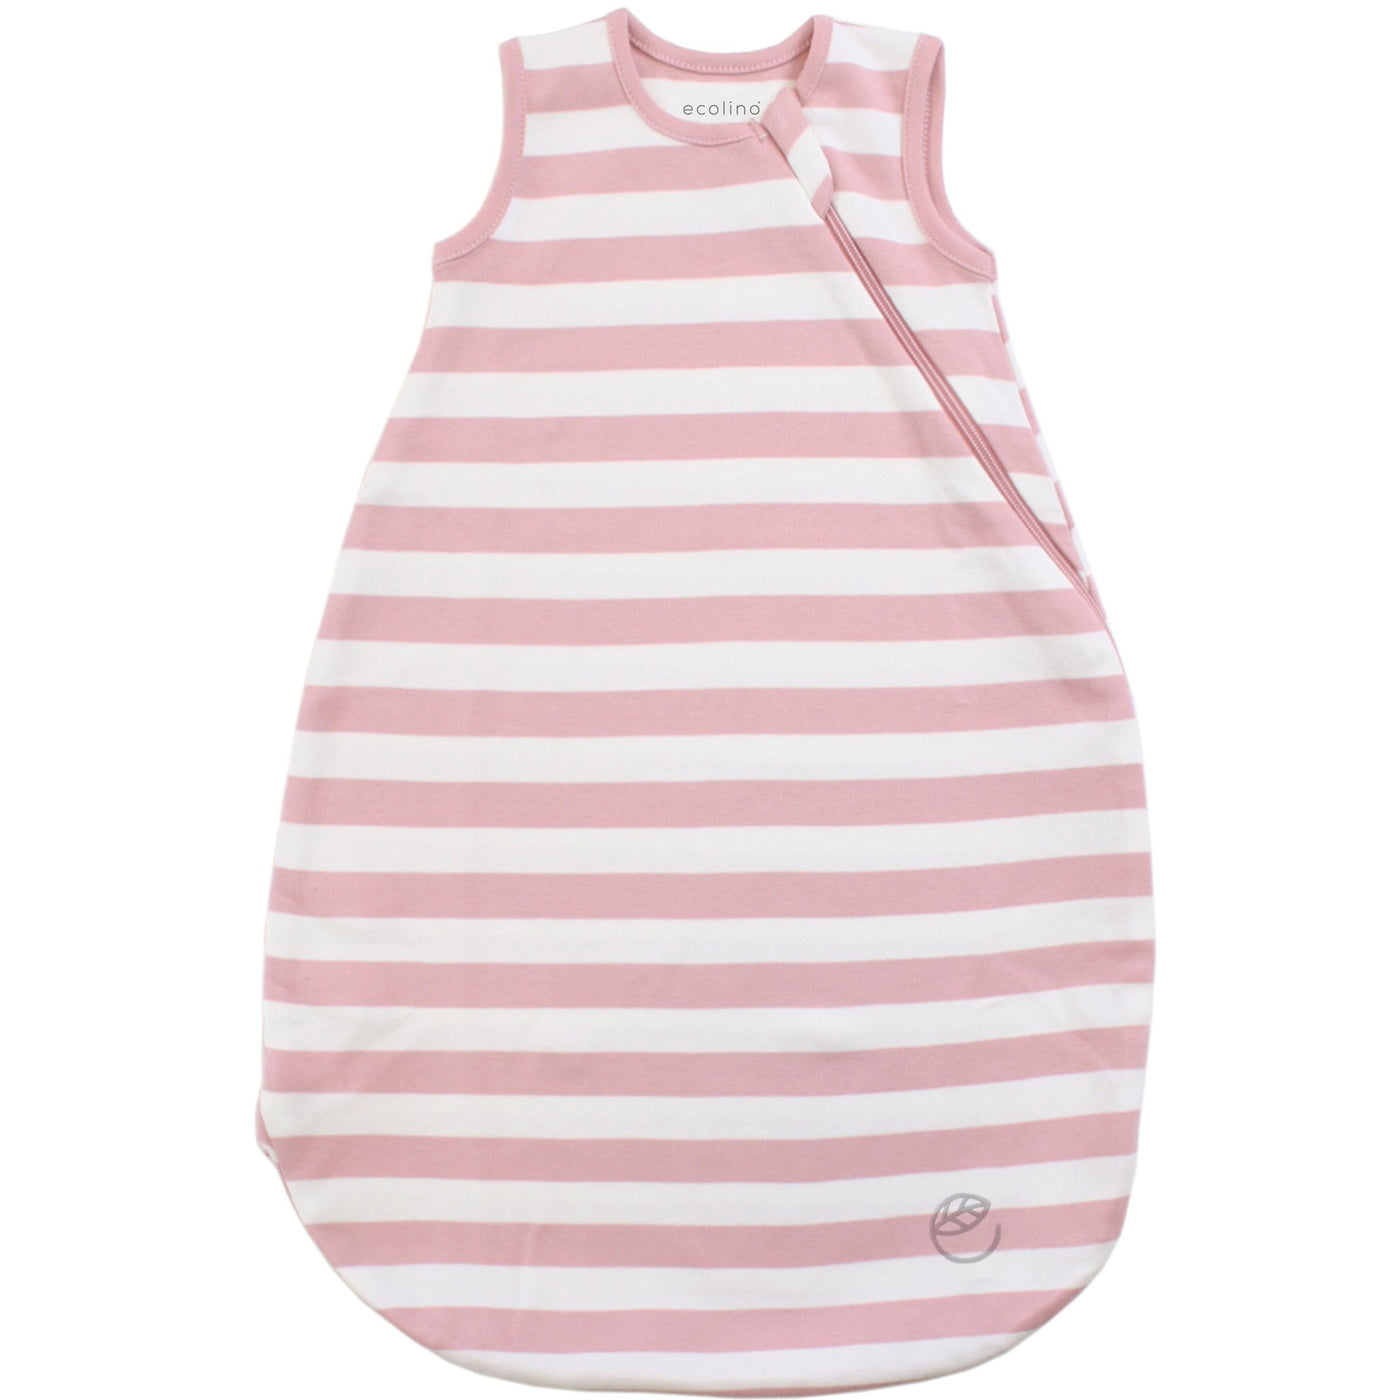 Imperfect Ecolino Organic Cotton Basic Baby Sleep Bag or Sack, Blush